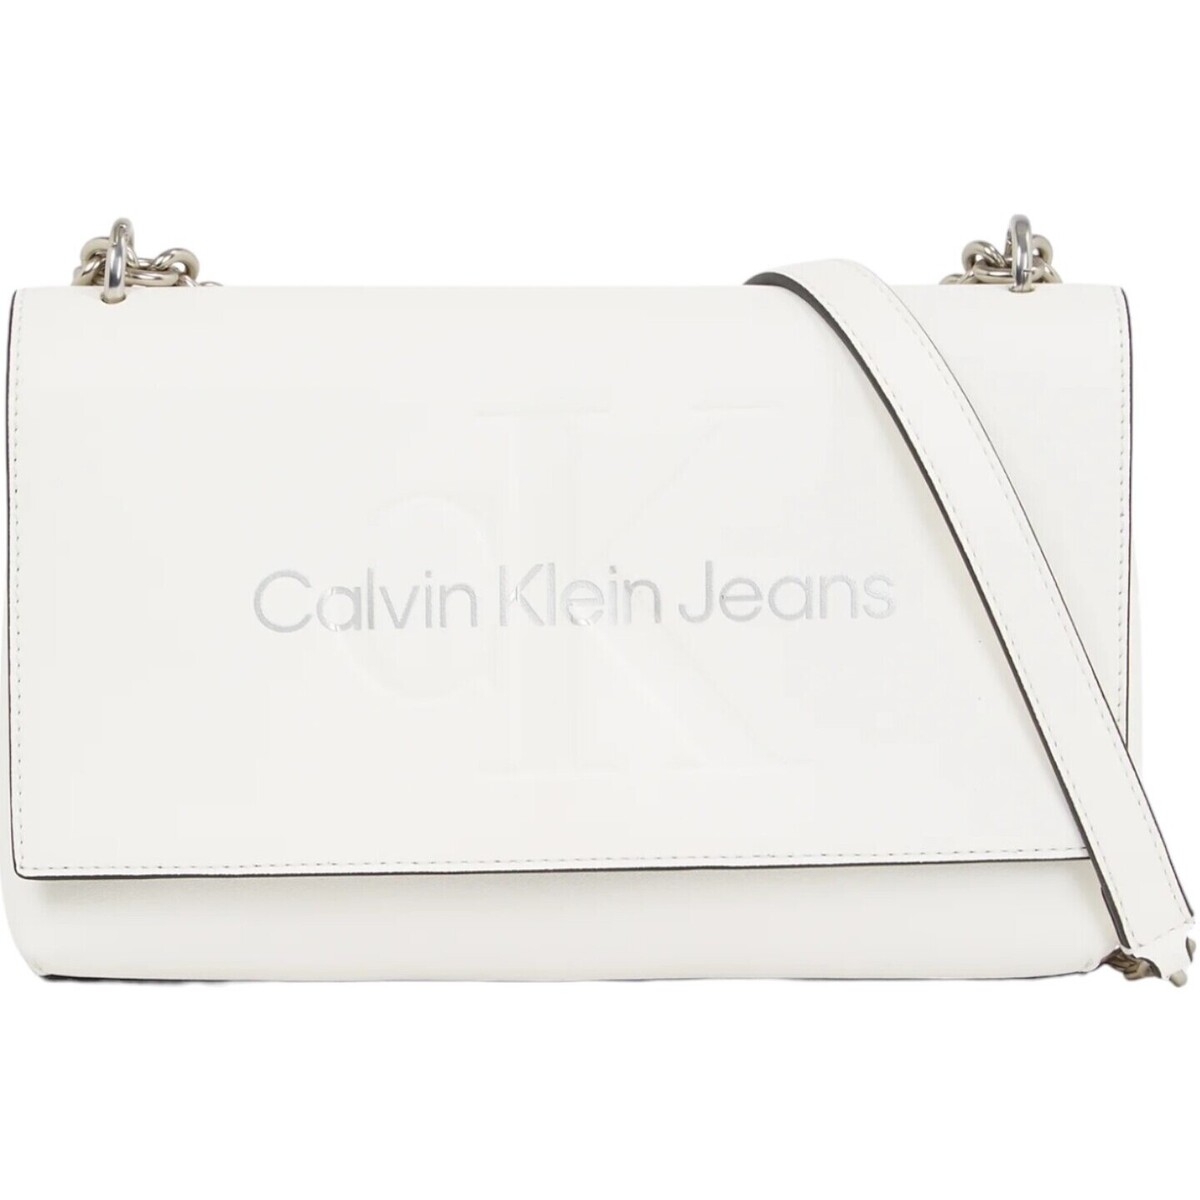 Borse Donna Borse Calvin Klein Jeans Borsa Tracolla Donna White Silver K60K611866 Bianco